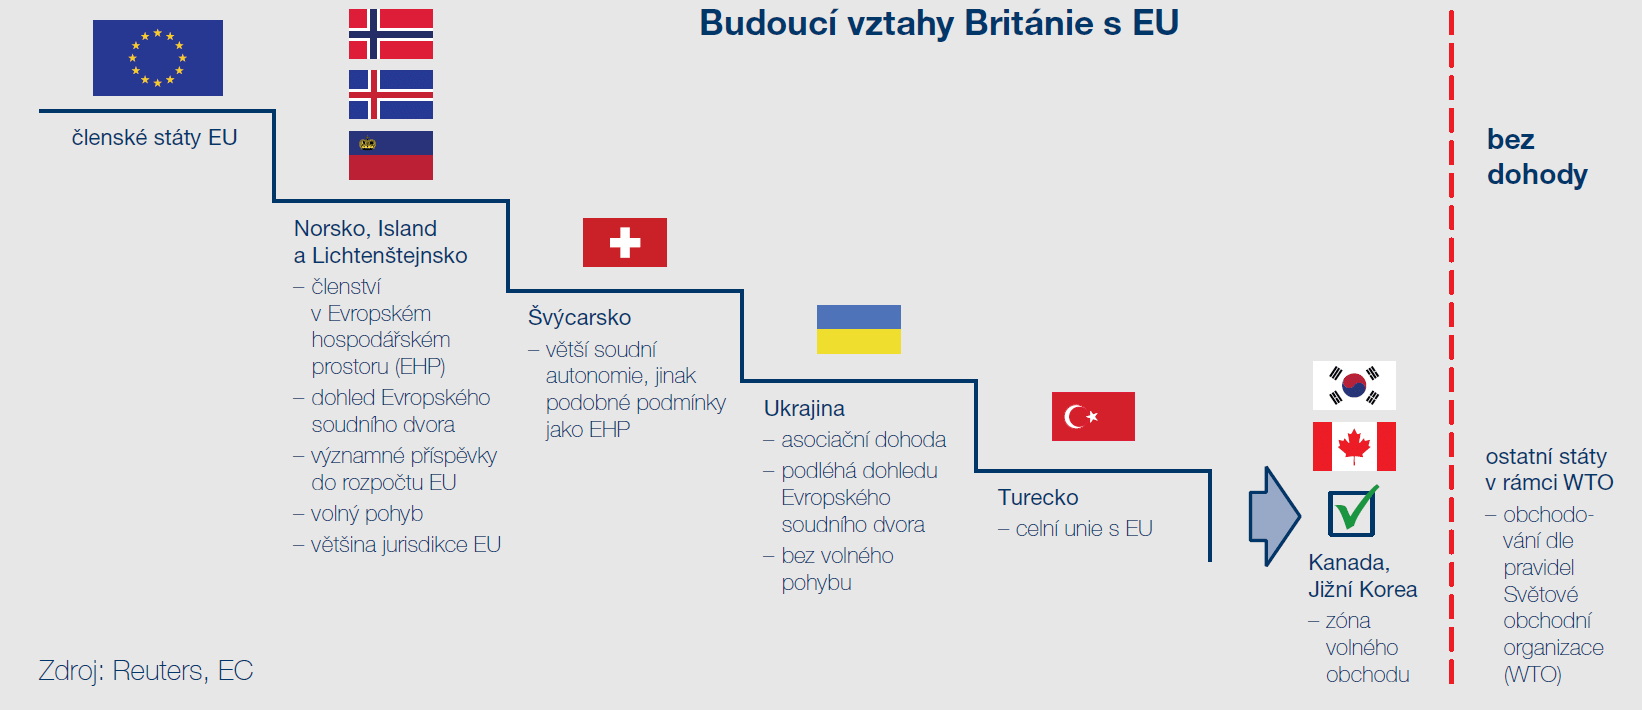 Budoucí vztahy Británie s EU